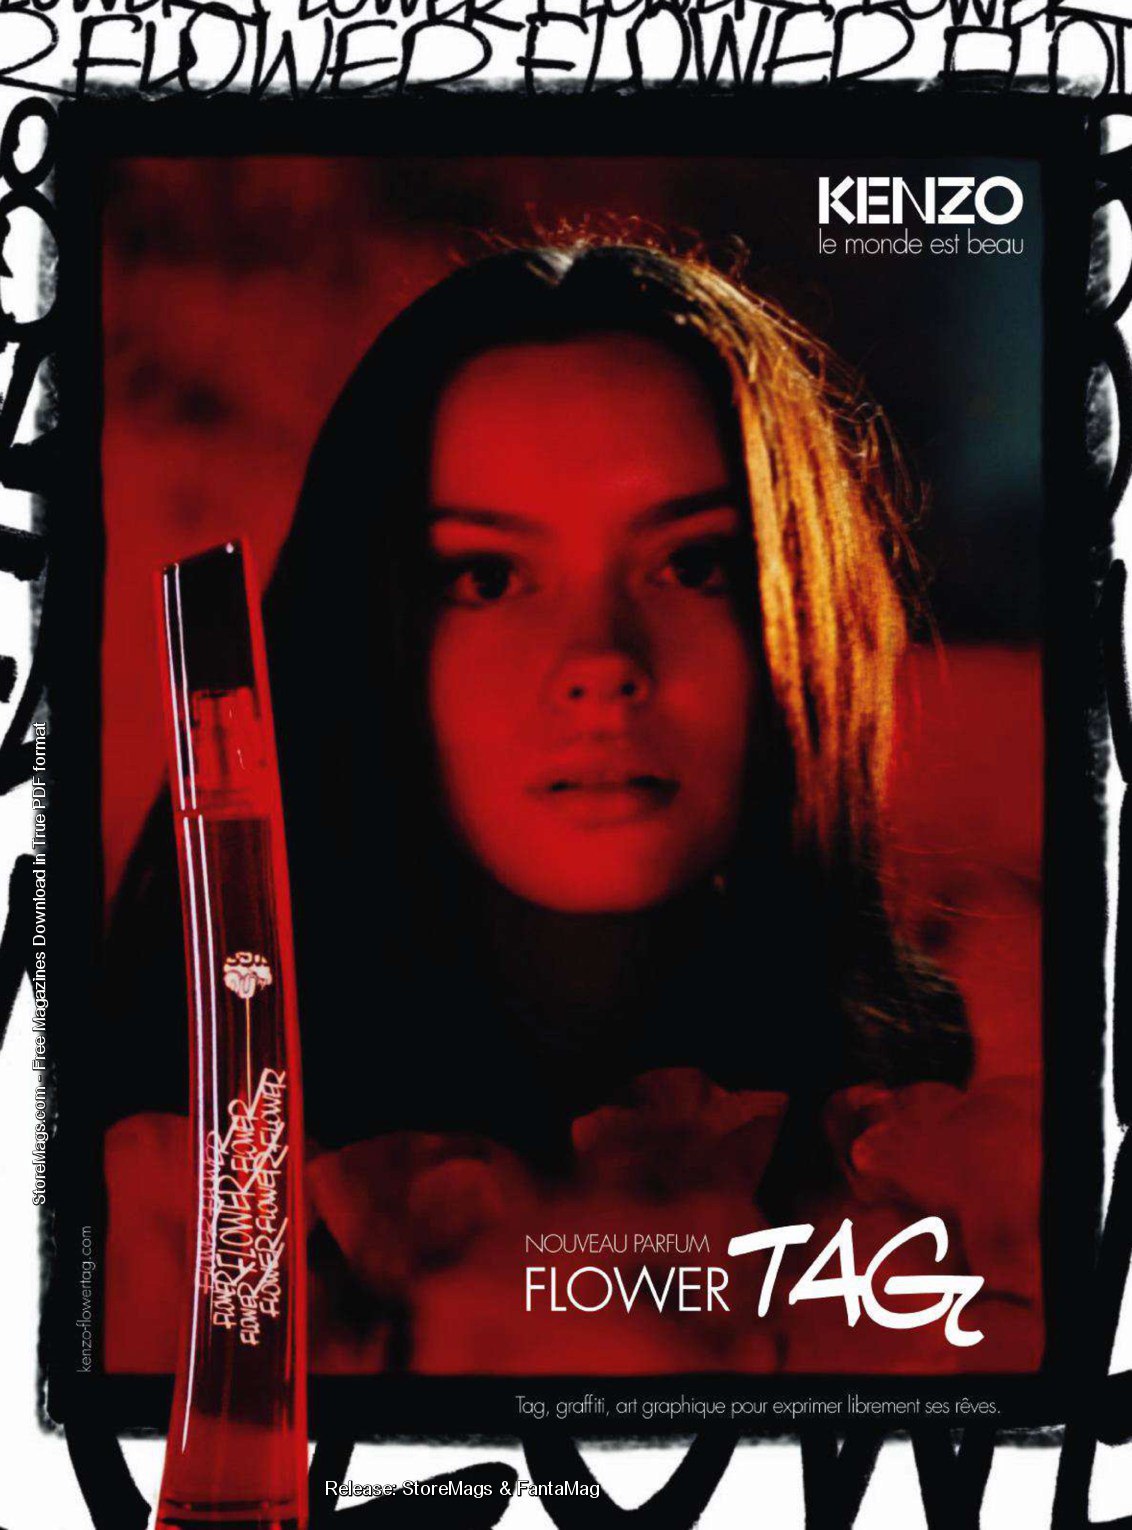 kenzo flower tag